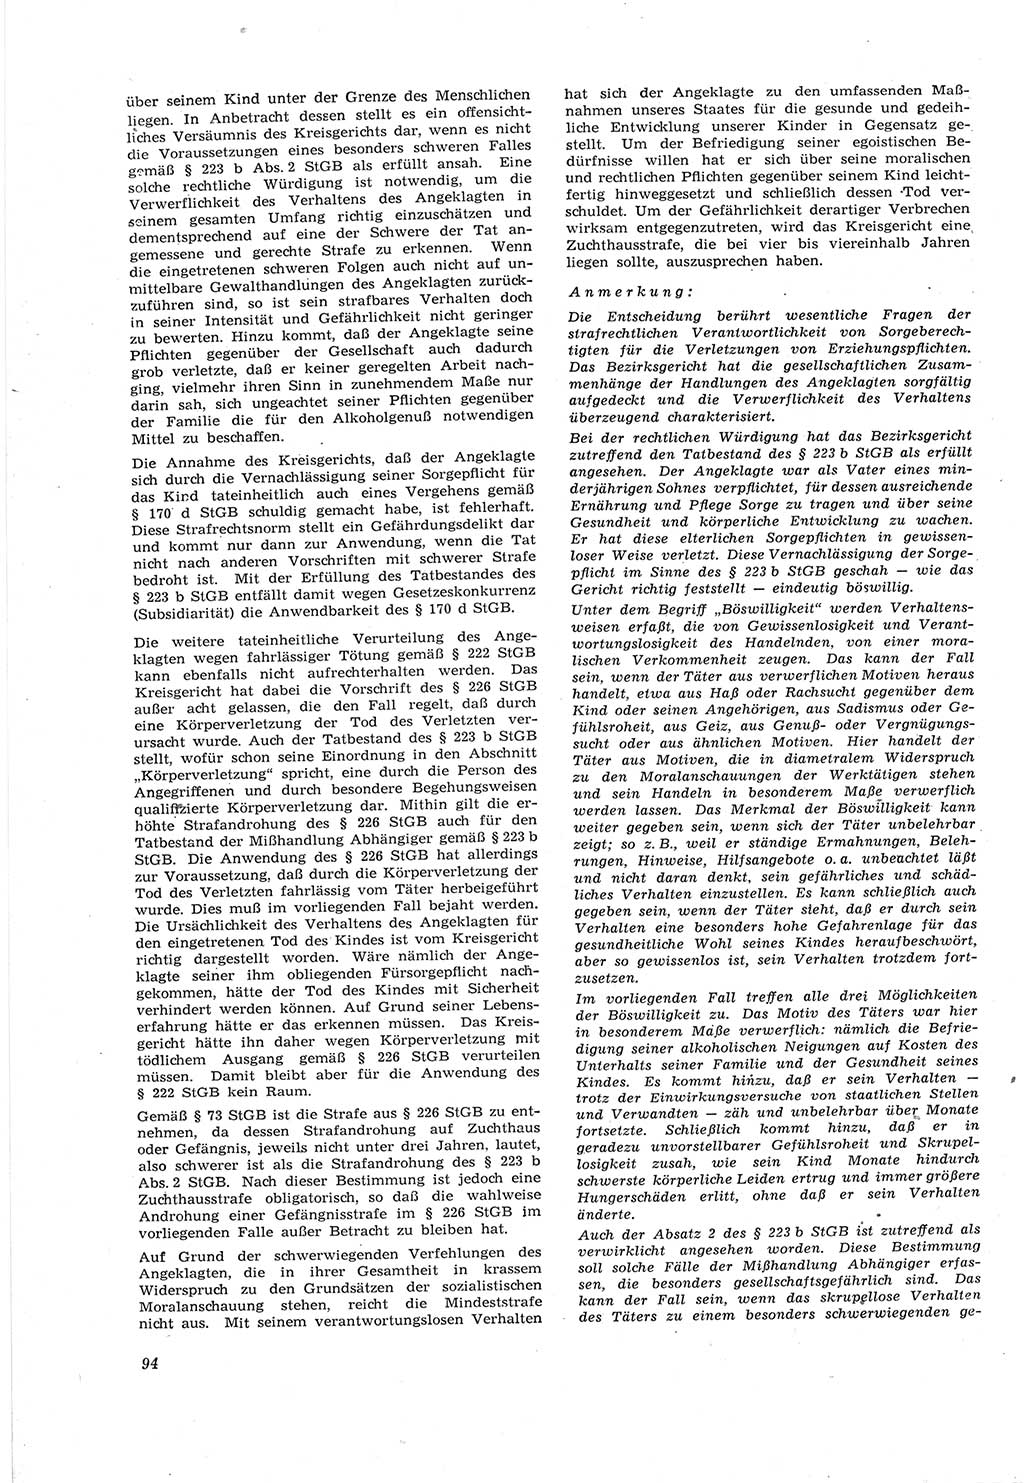 Neue Justiz (NJ), Zeitschrift für Recht und Rechtswissenschaft [Deutsche Demokratische Republik (DDR)], 18. Jahrgang 1964, Seite 94 (NJ DDR 1964, S. 94)